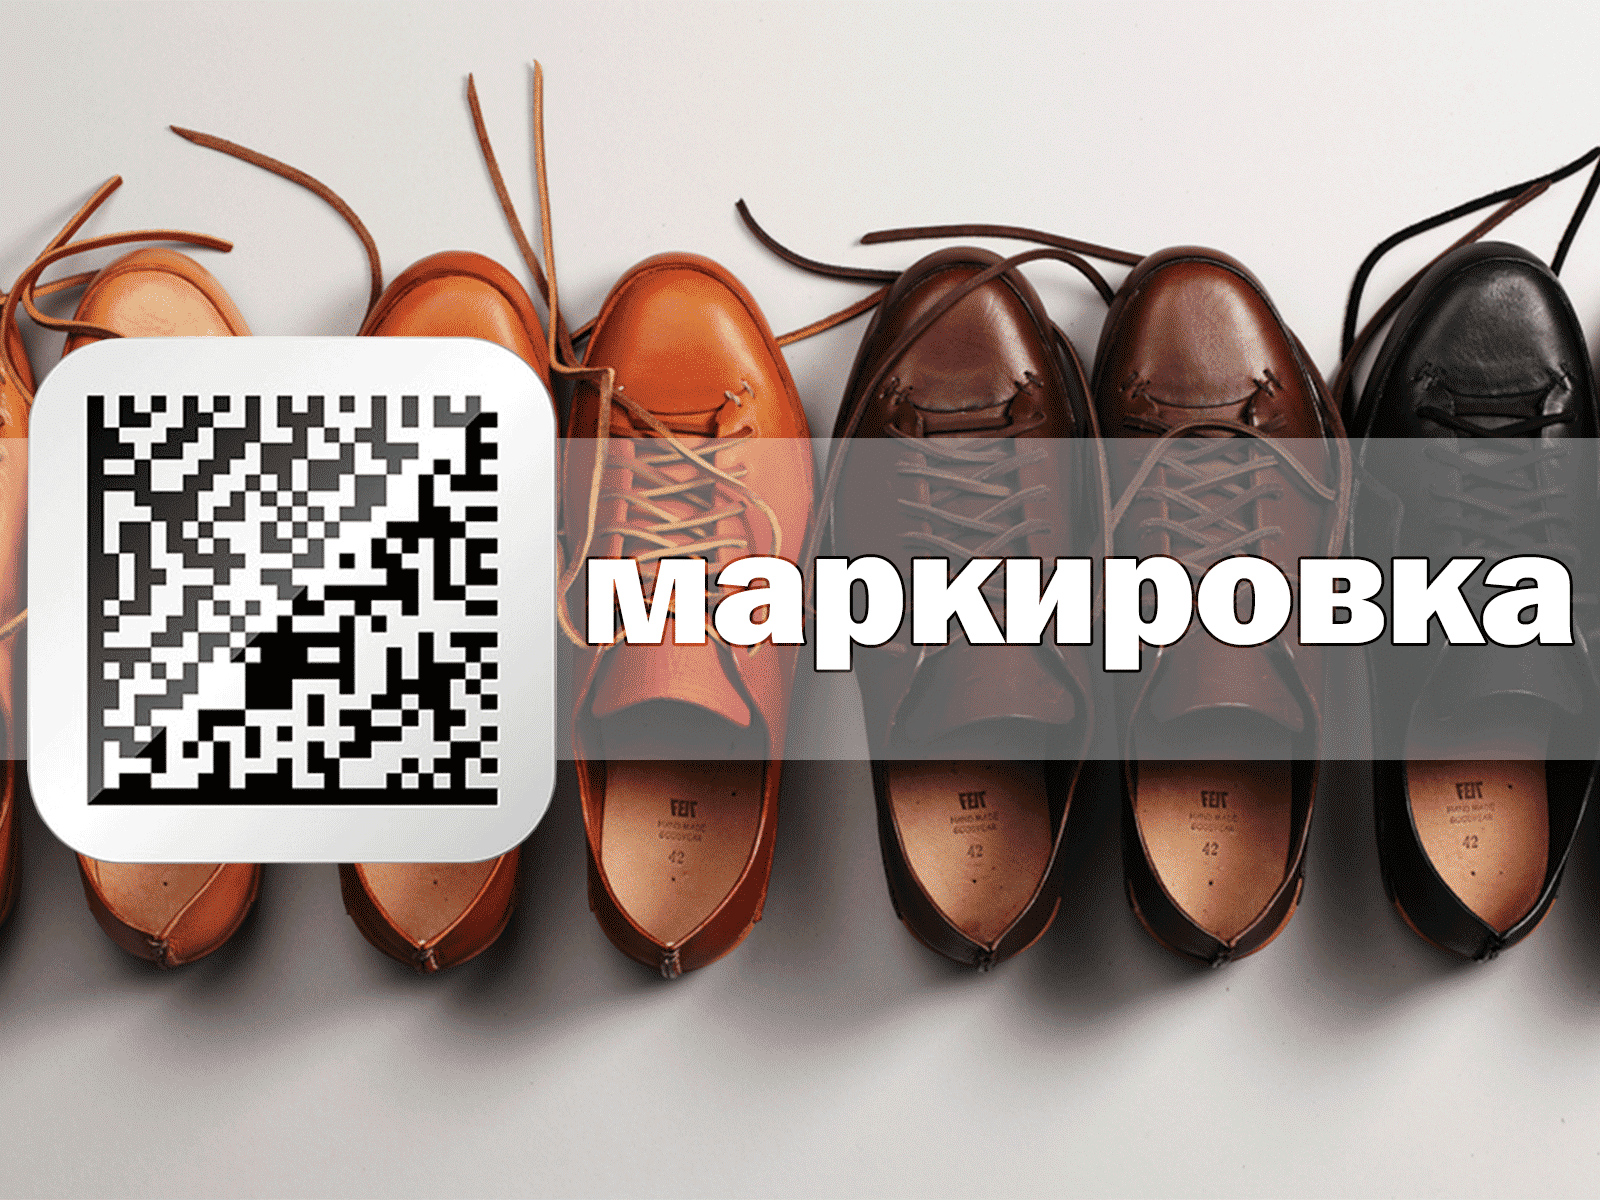 Министерство по налогам и сборам в связи с поступающими обращениями субъектов хозяйствования, осуществляющих оборот обуви, ввозимой из Российской Федерации, сообщает.